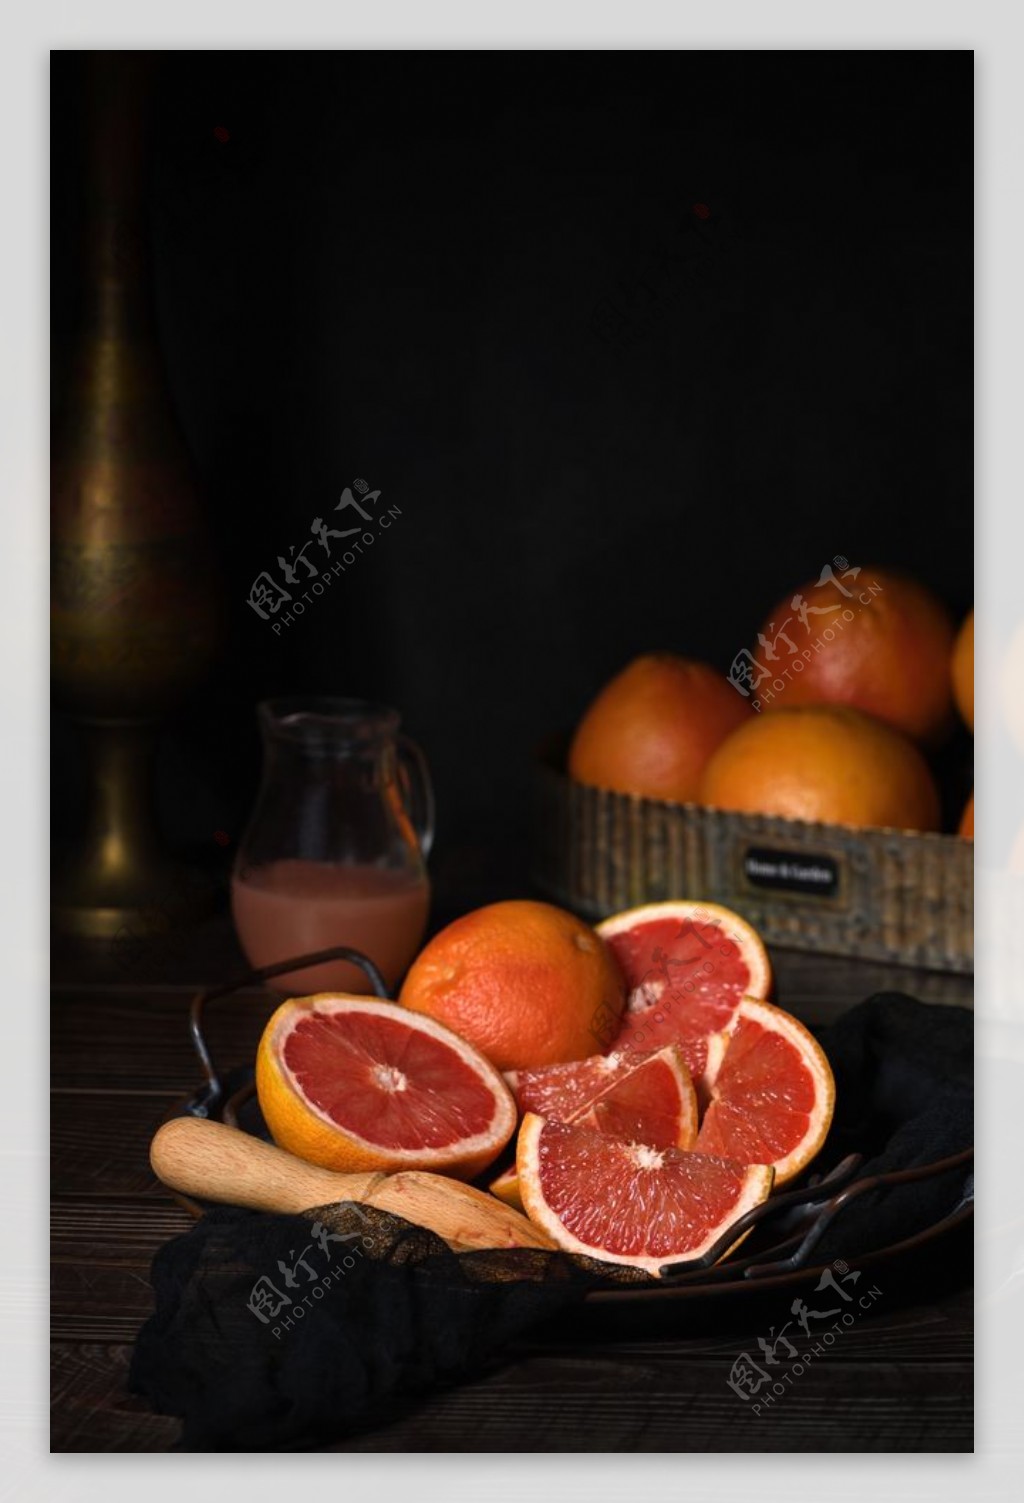 柚子图片